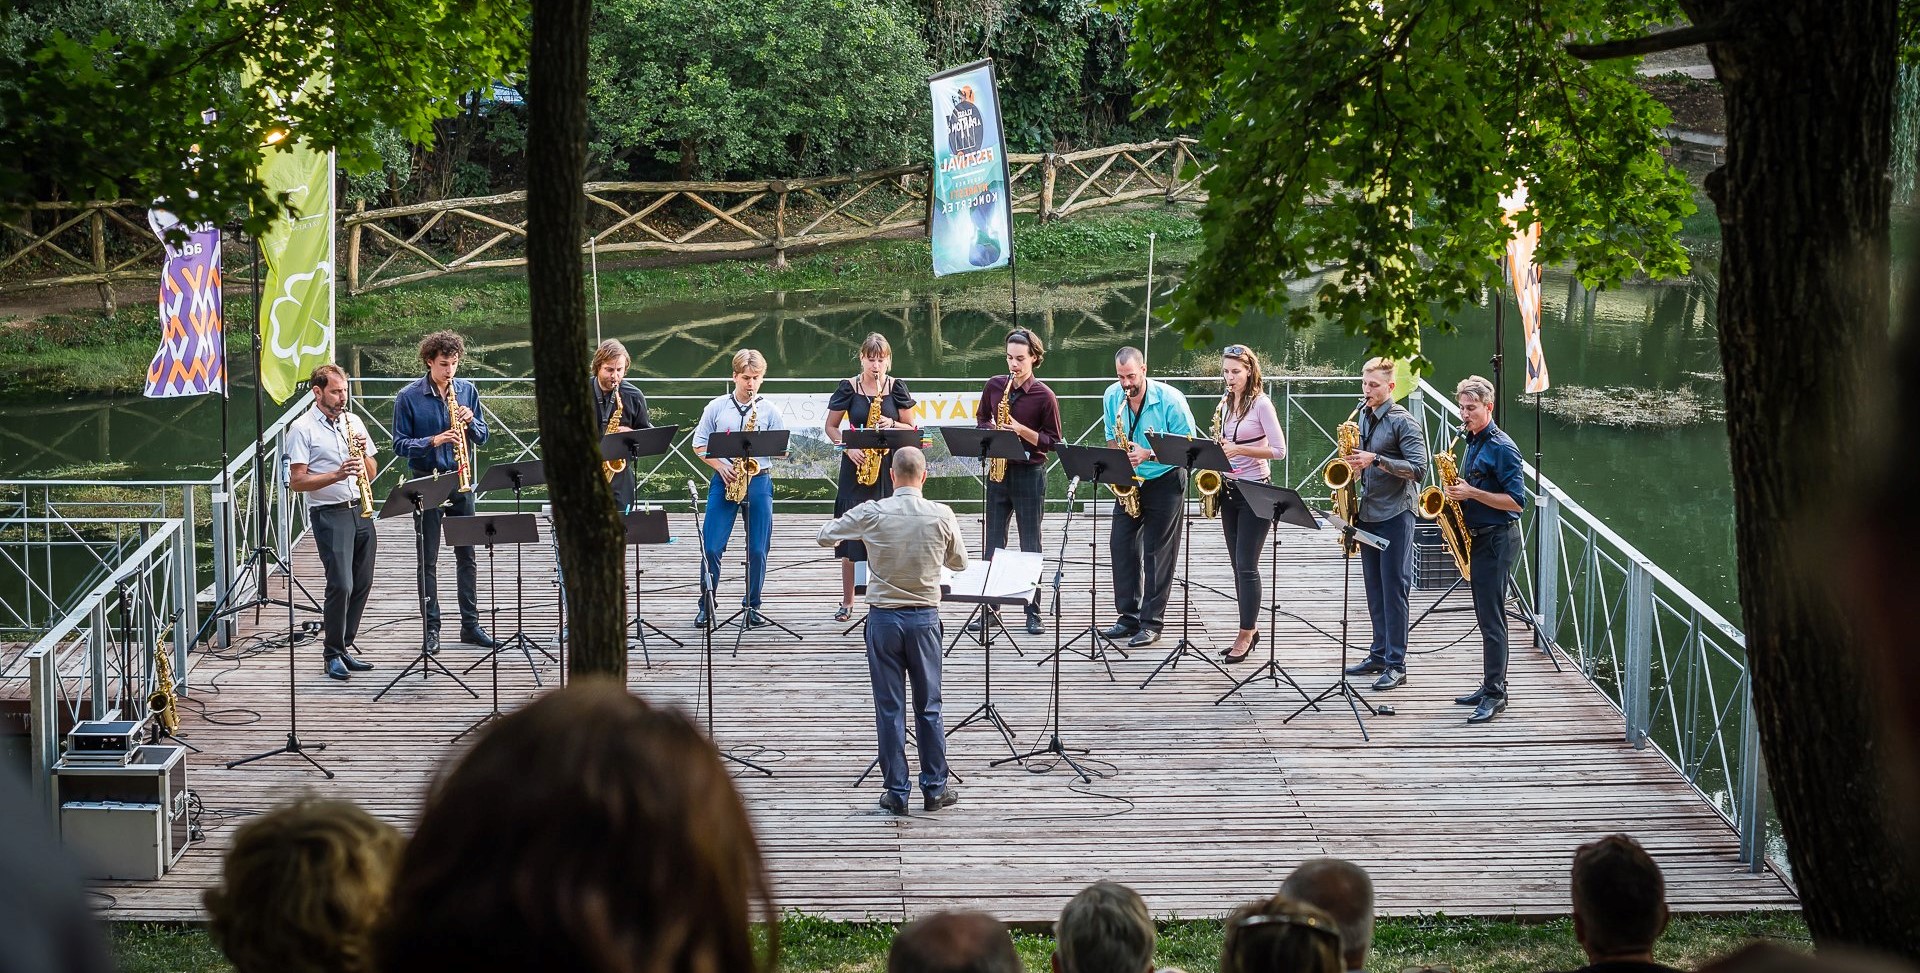 Ingyenes nyáresti koncertek csendülnek fel a Balaton nem mindennapi helyszínein